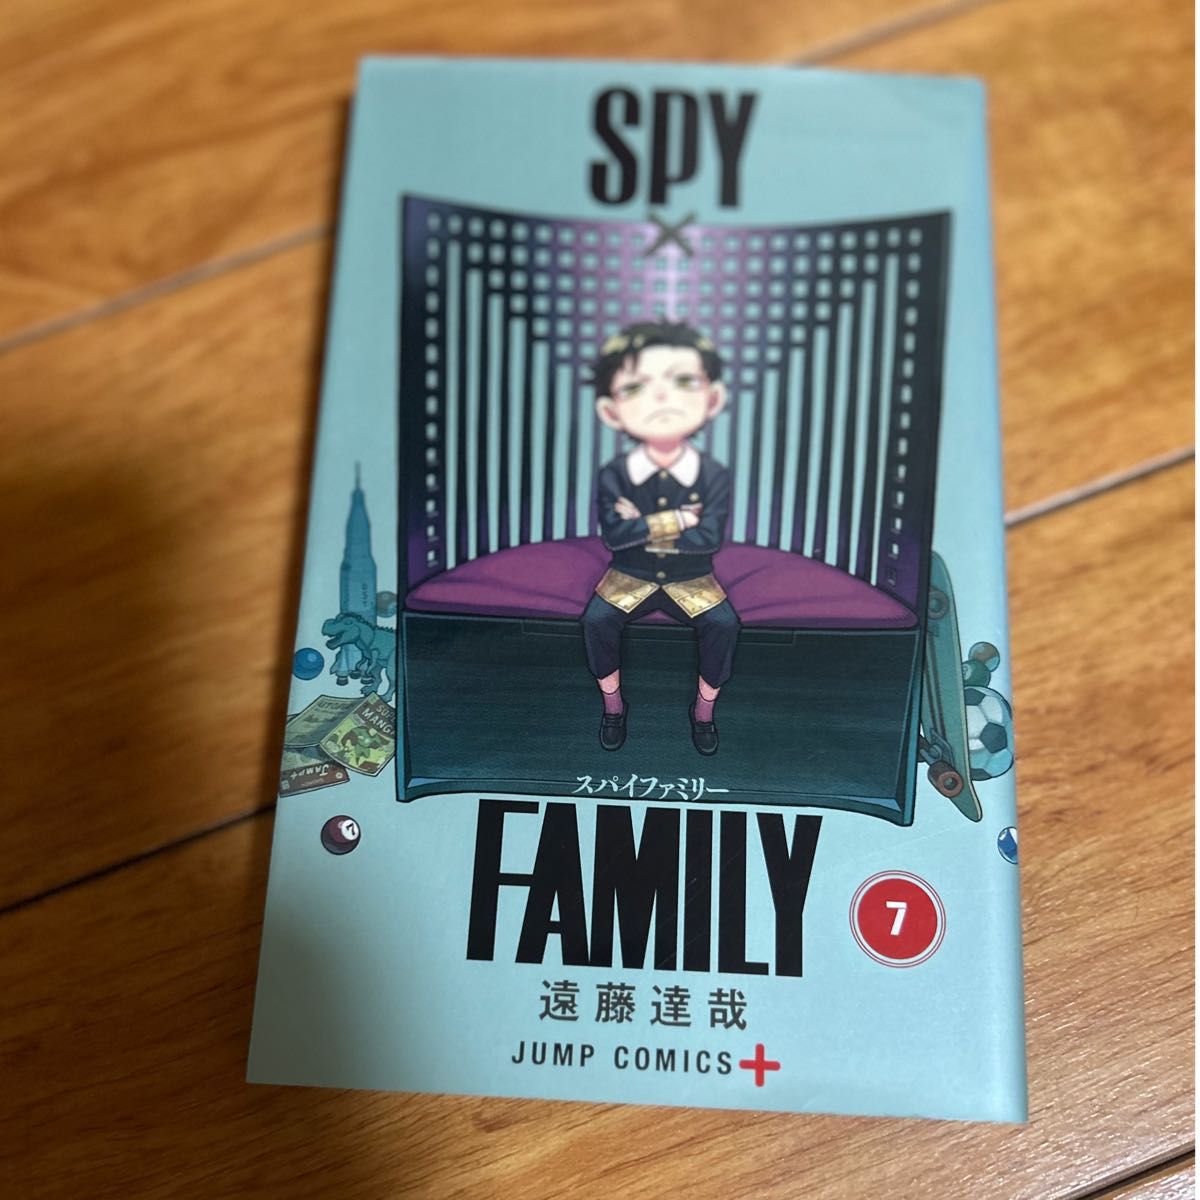 スパイファミリー SPY コミック FAMILY 7巻